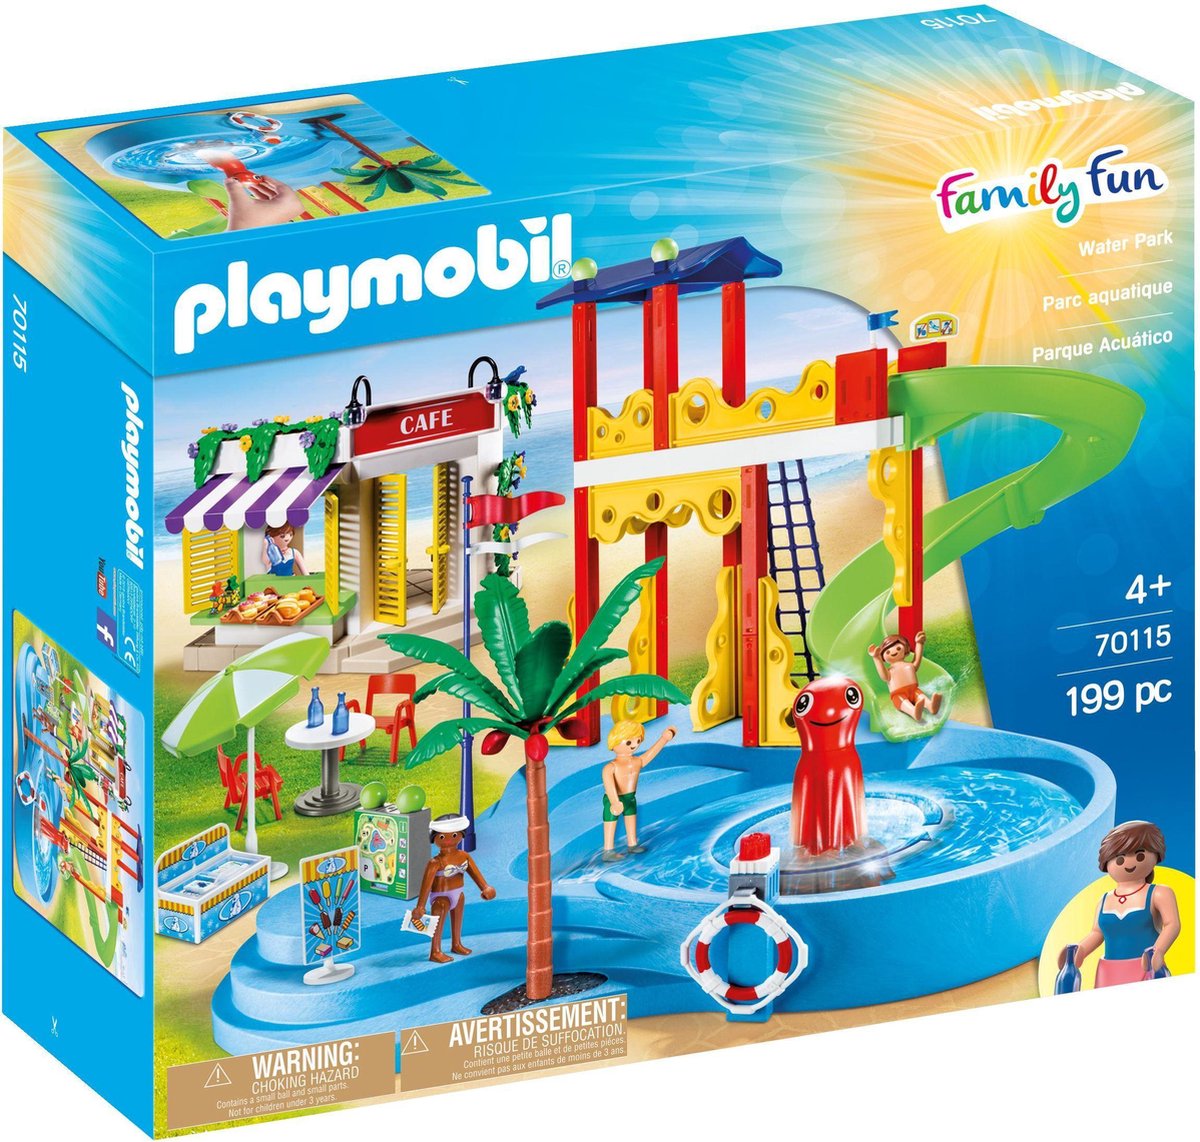 Playmobil Family Fun Waterpark - 70115